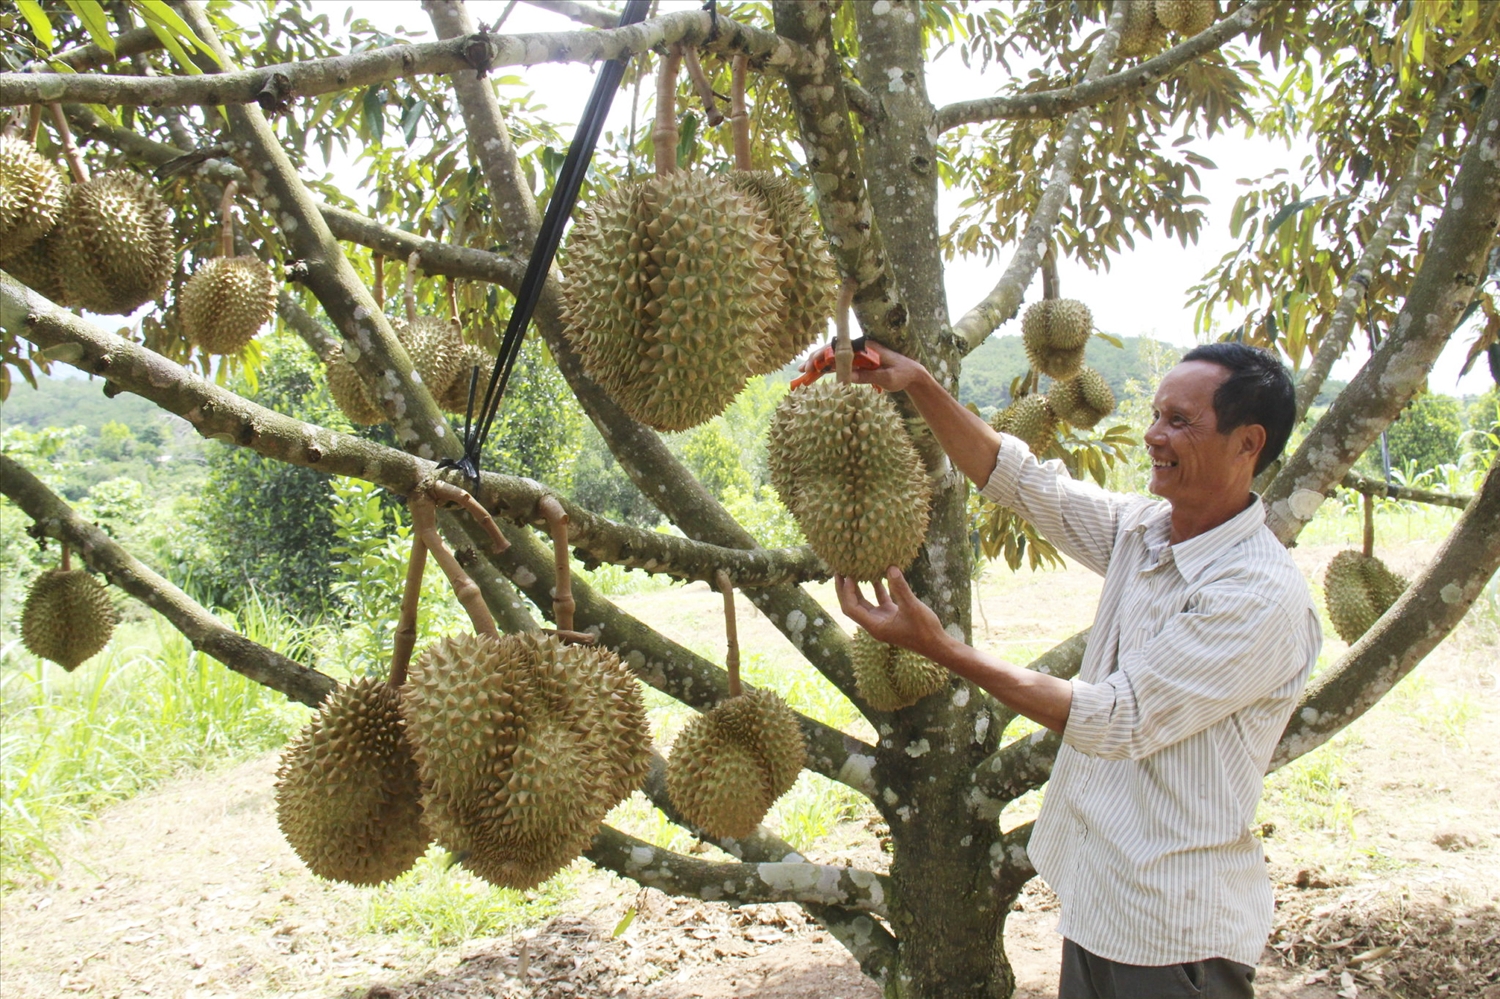 Cây sầu riêng đang được người dân Khánh Sơn đầu tư theo hướng nông nghiệp sạch, sản xuất theo tiêu chuẩn VietGAP đem lại giá trị kinh tế cao